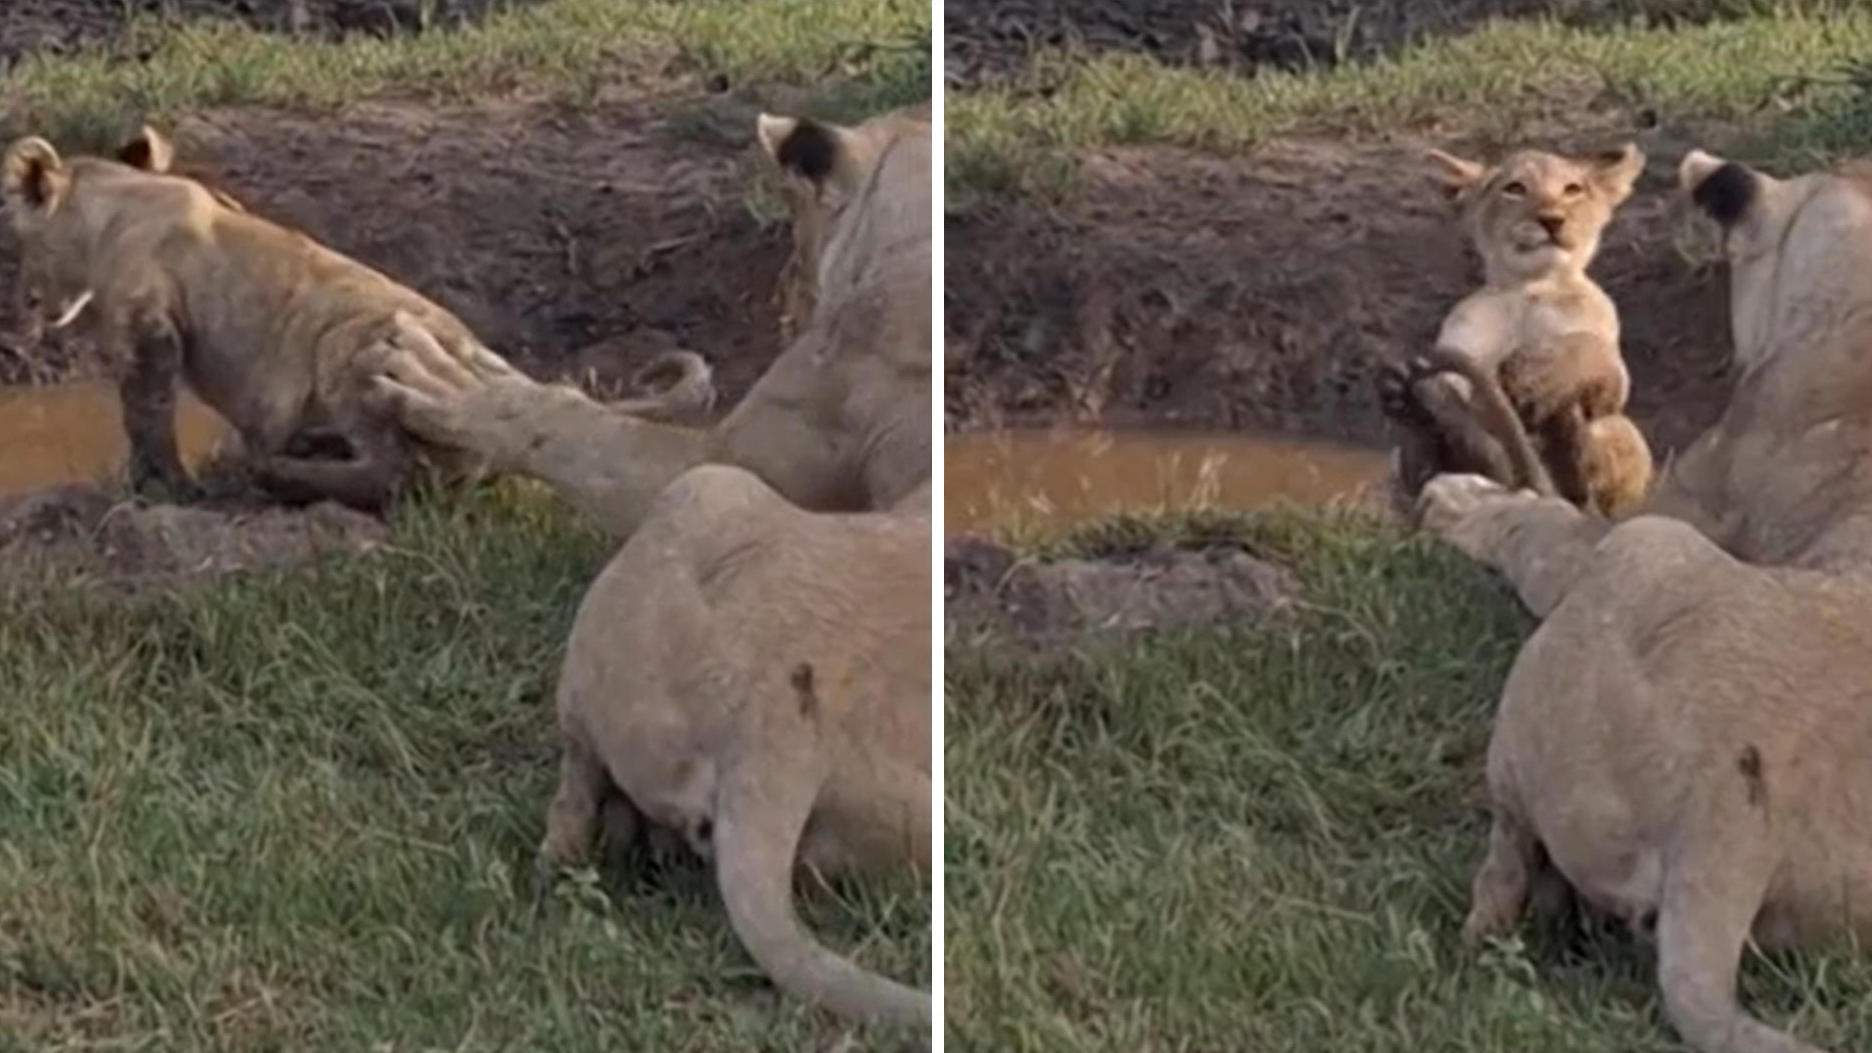 Und plopp!  Löwenmutter stößt ihr Junges in den Schlamm.  Dieser Gesichtsausdruck spricht Bände